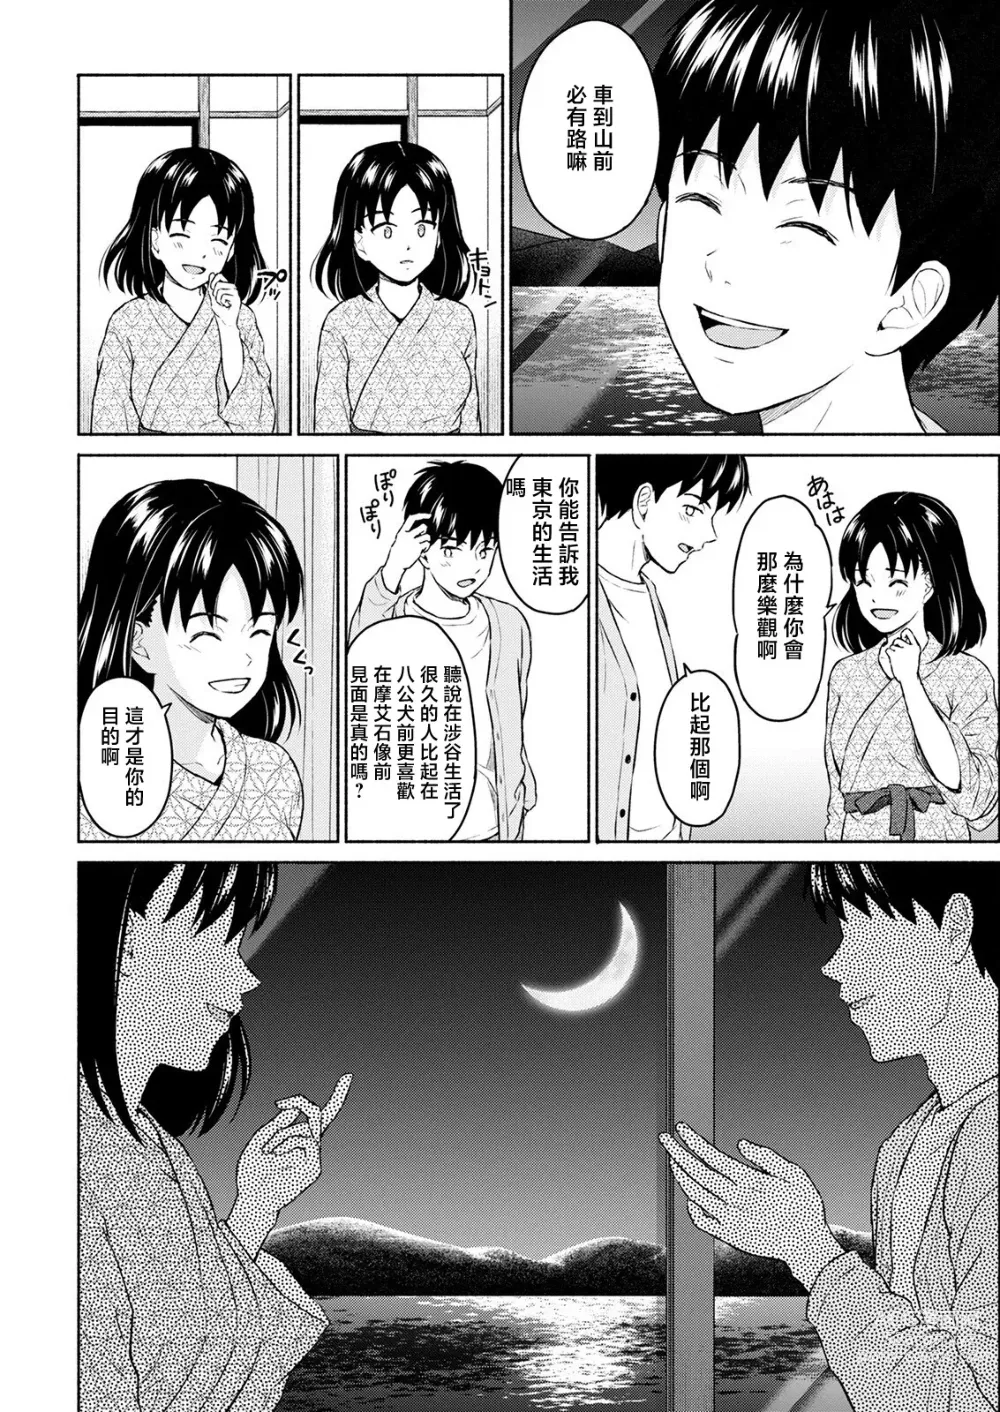 Page 10 of manga Marude Rokugatsu no Kohan o Fuku Kaze no you ni Zenpen